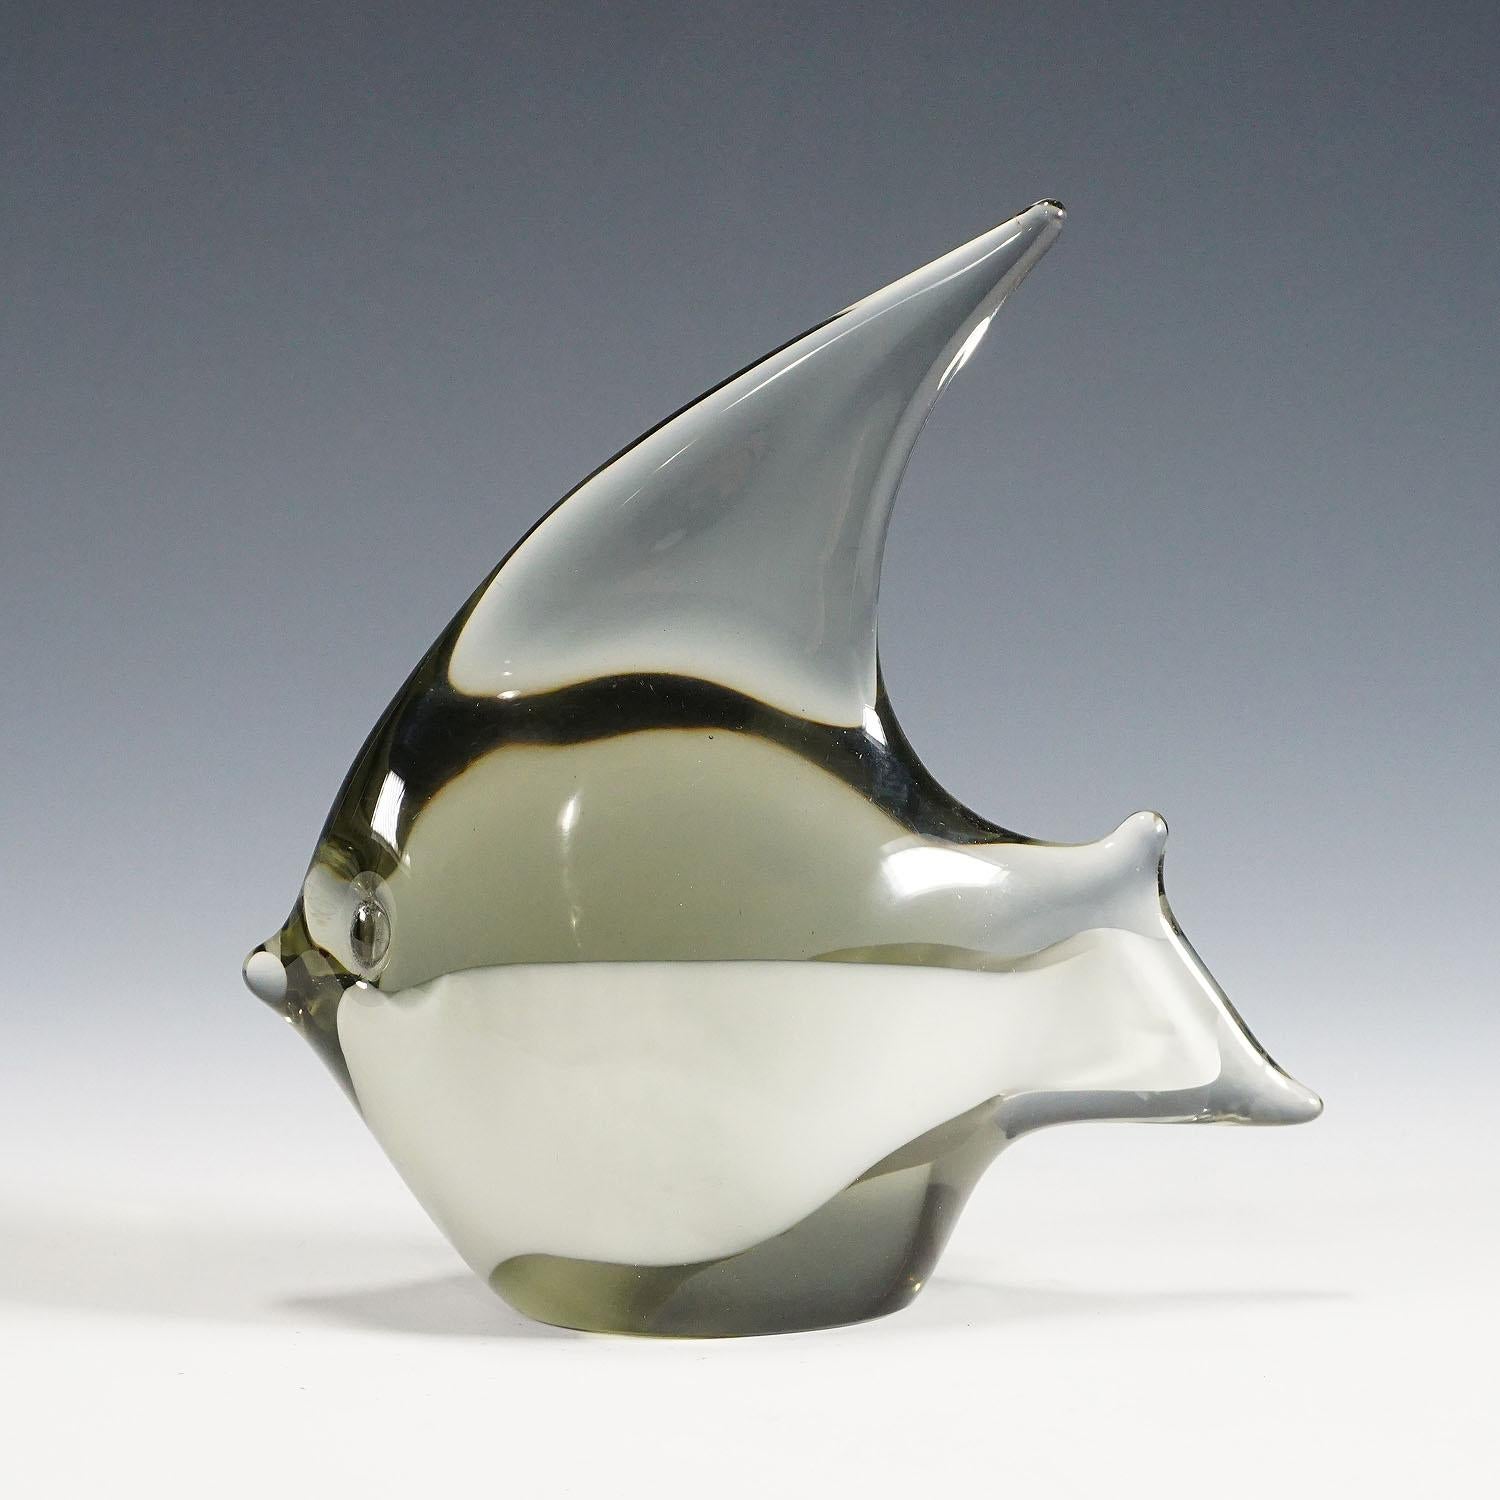 Eine Skulptur eines stilisierten Fisches aus rauchgrauem Glas mit weißem Glasband. Handgefertigt in der Glasmanufaktur Gral, Deutschland. Entworfen von Livio Seguso um 1970. Eingeschnittene Signatur des Künstlers (LS) auf dem Sockel.

Livio Seguso